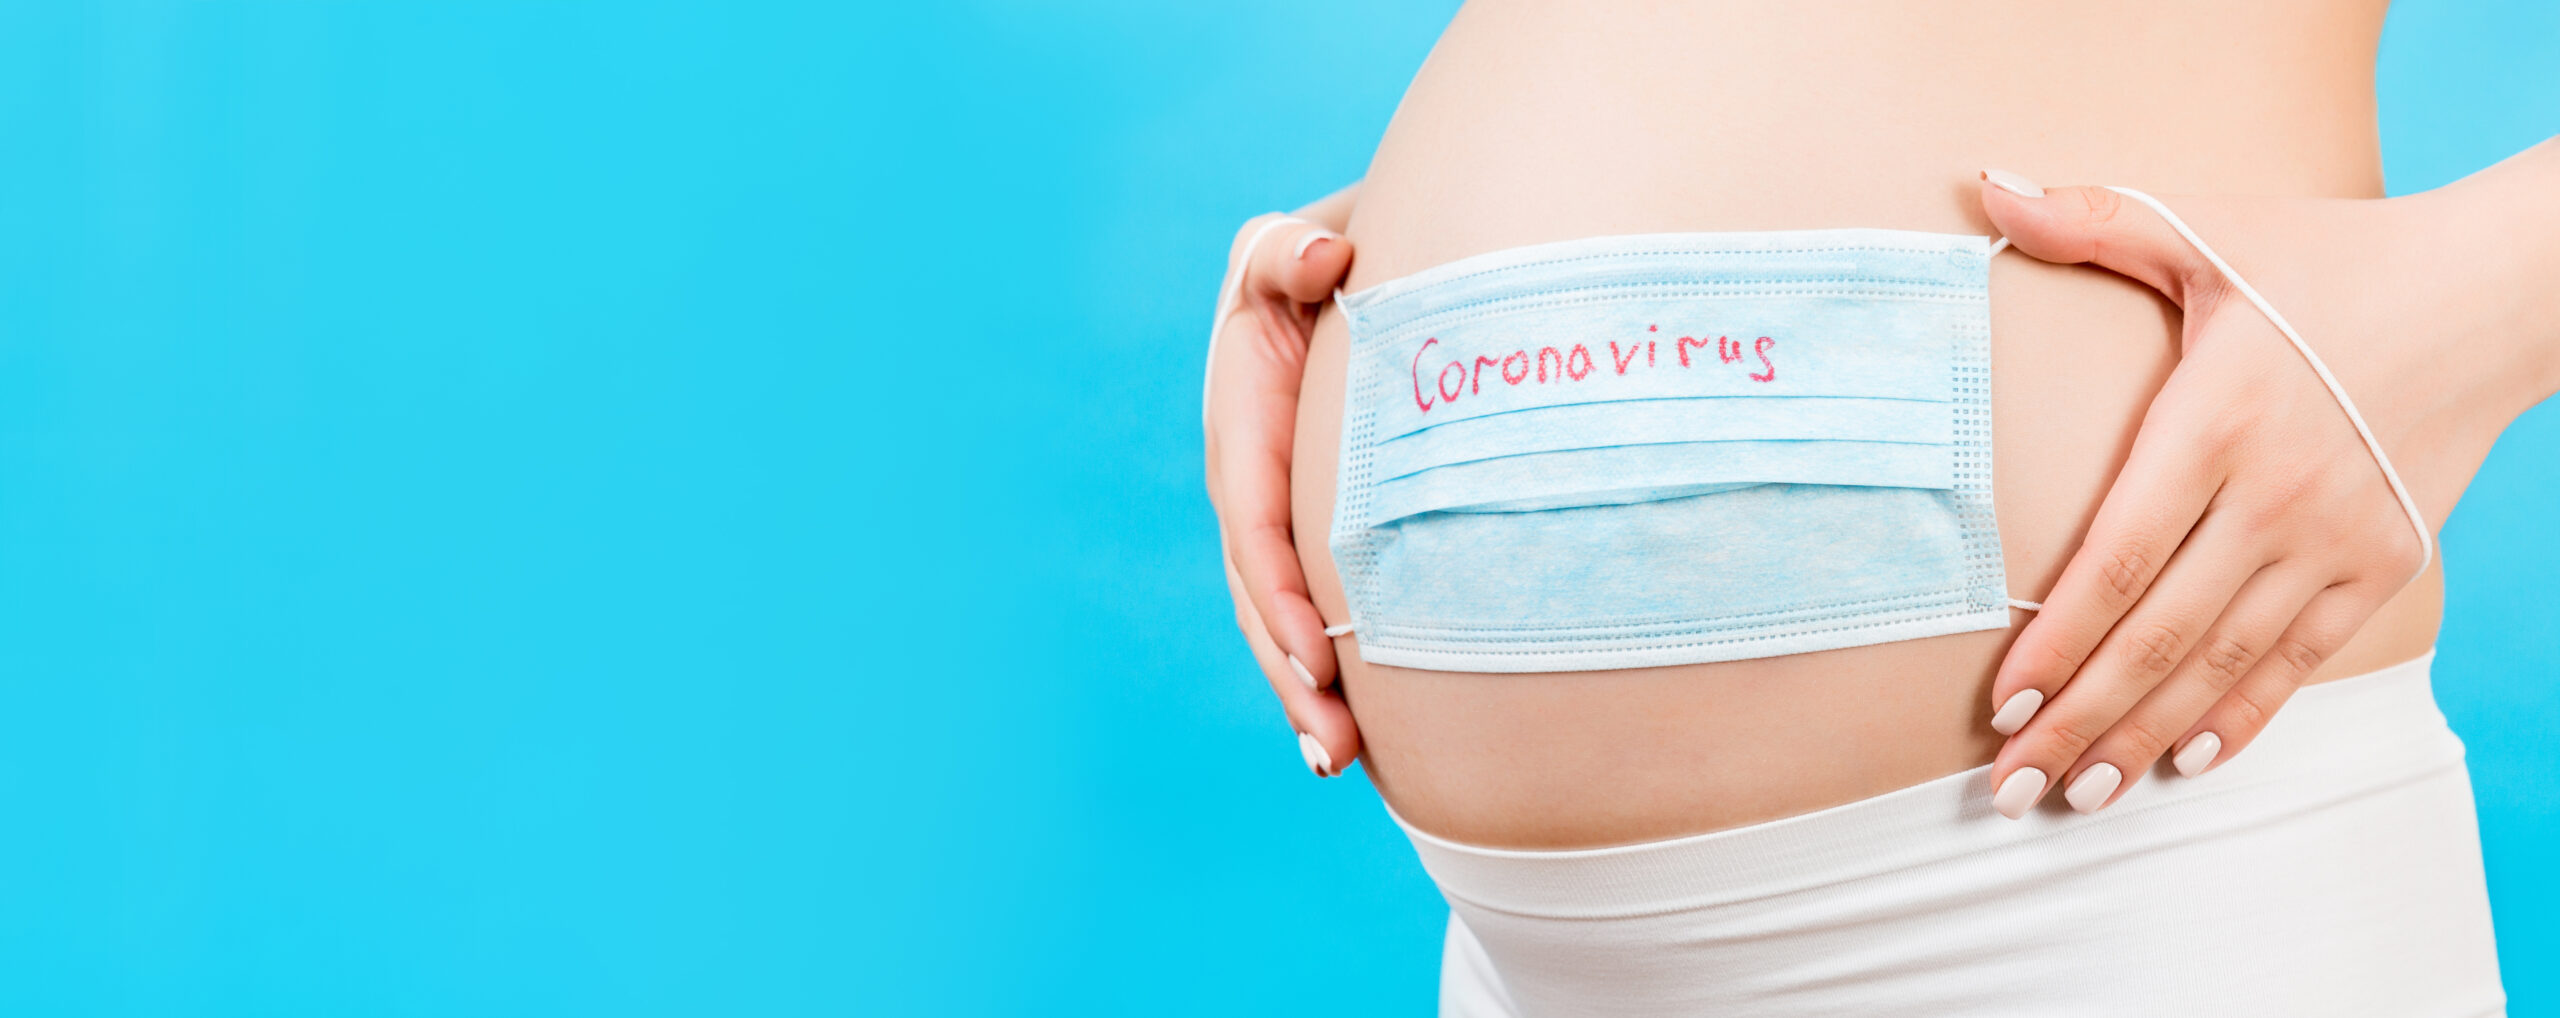 ΠΟΥ Εγκυμοσύνη: Προστασία από τους σοβαρούς κινδύνους της Covid-19 δίνουν  οι νέες συστάσεις του Οργανισμού | healthweb.gr